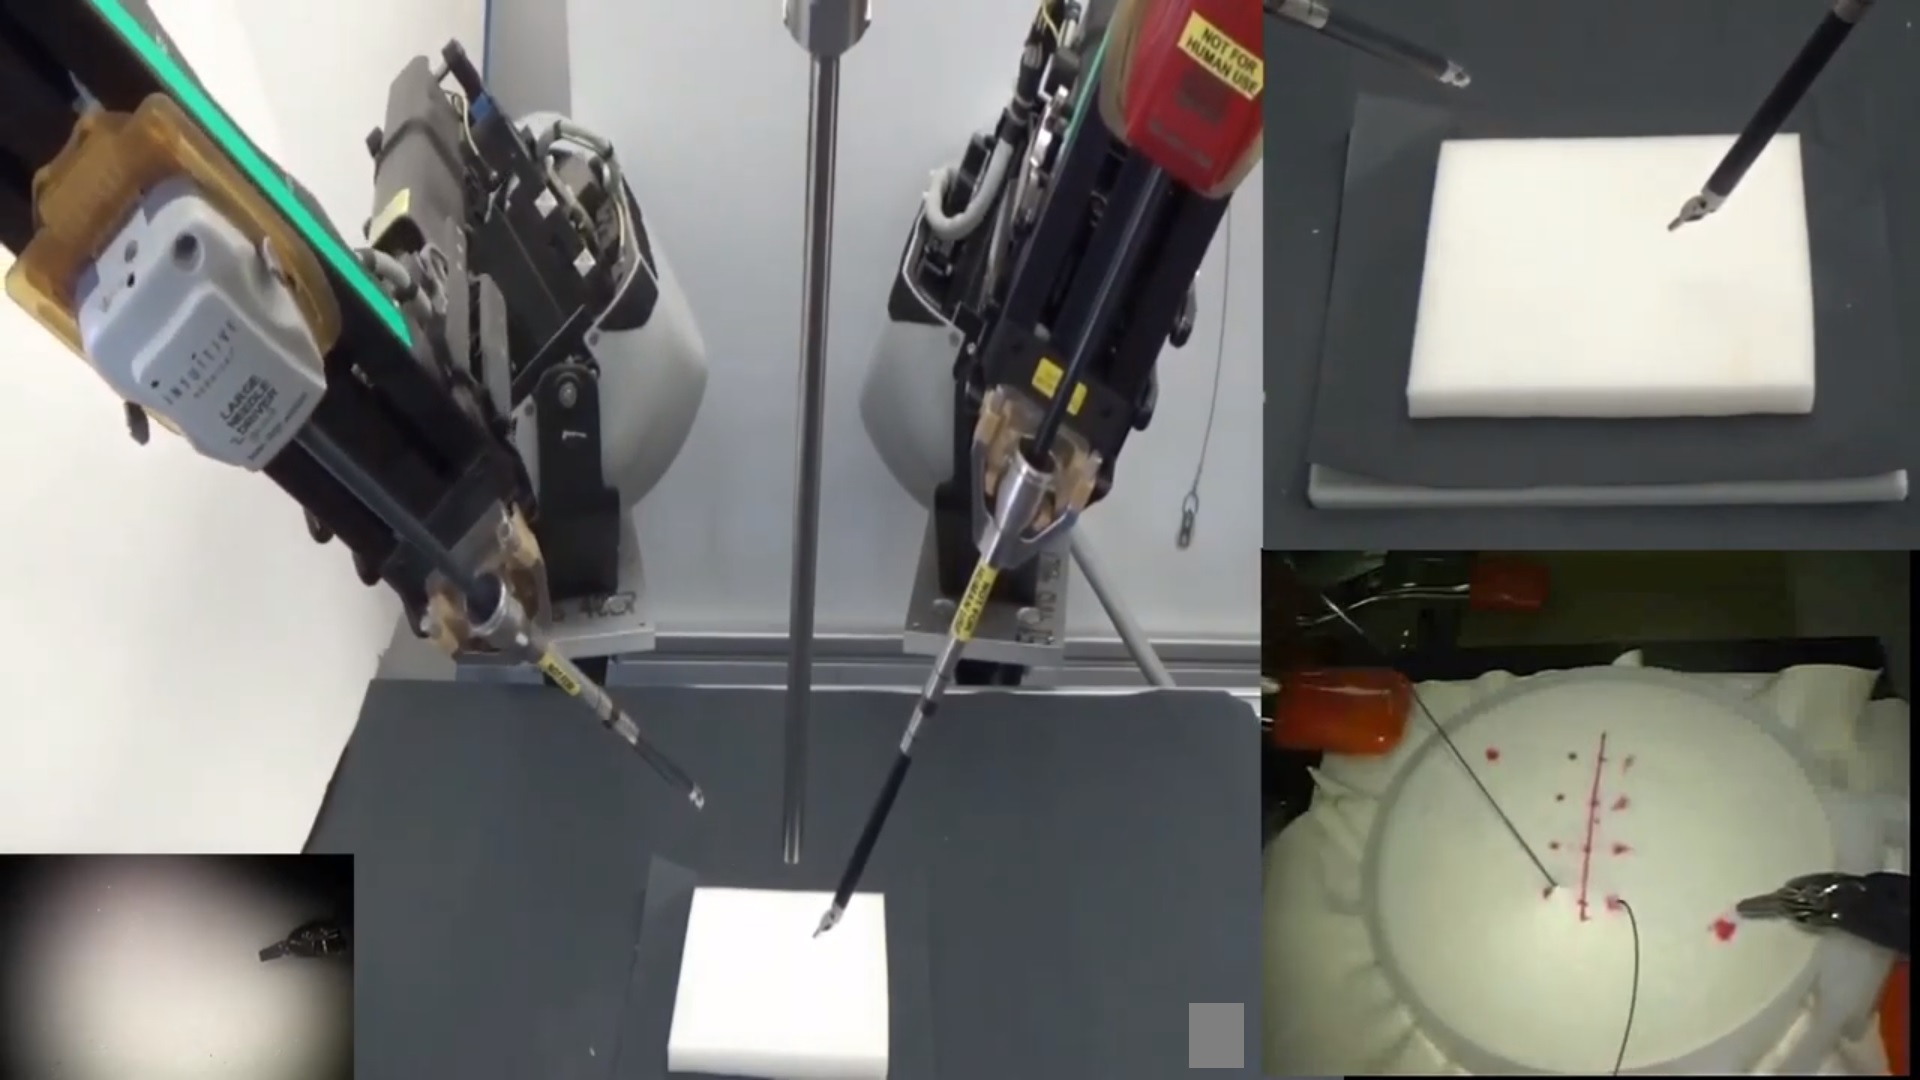 Entrenan a un robot con videos de cirugías para que aprenda a suturar heridas